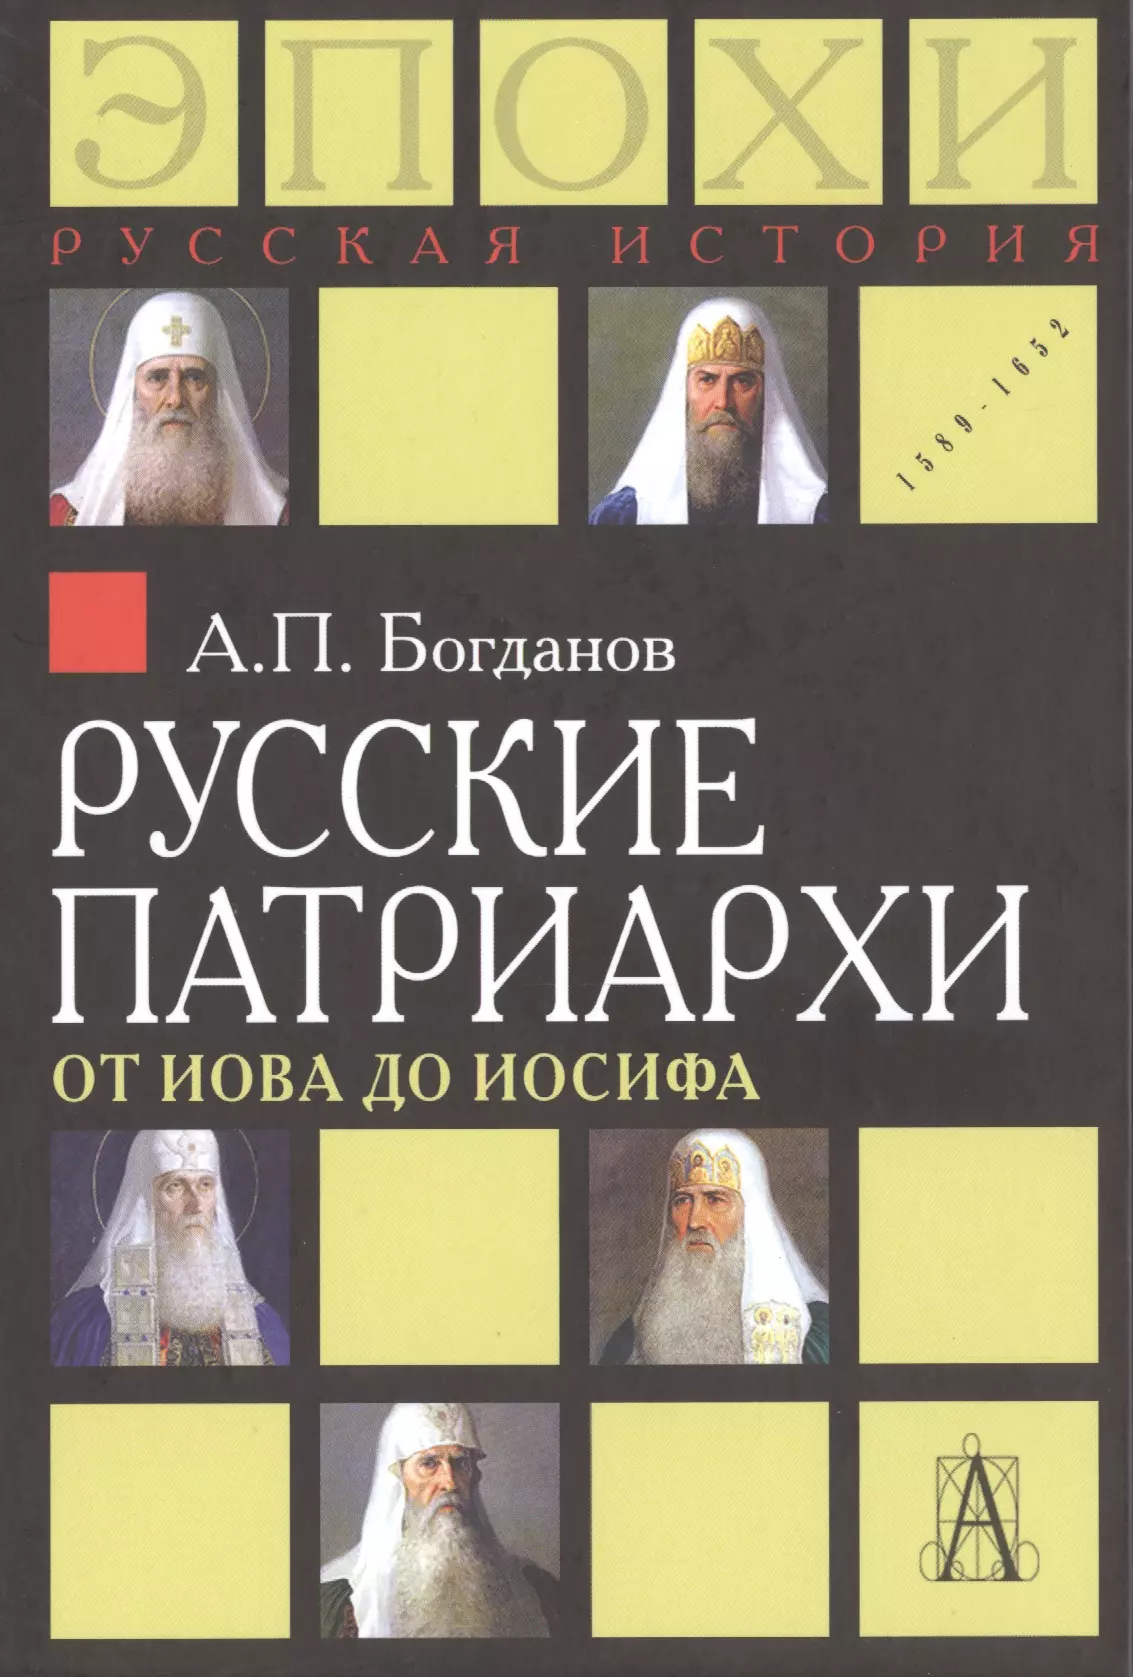 Богданов Андрей Петрович - Русские патриархи. От Иова до Иосифа.  2-издание